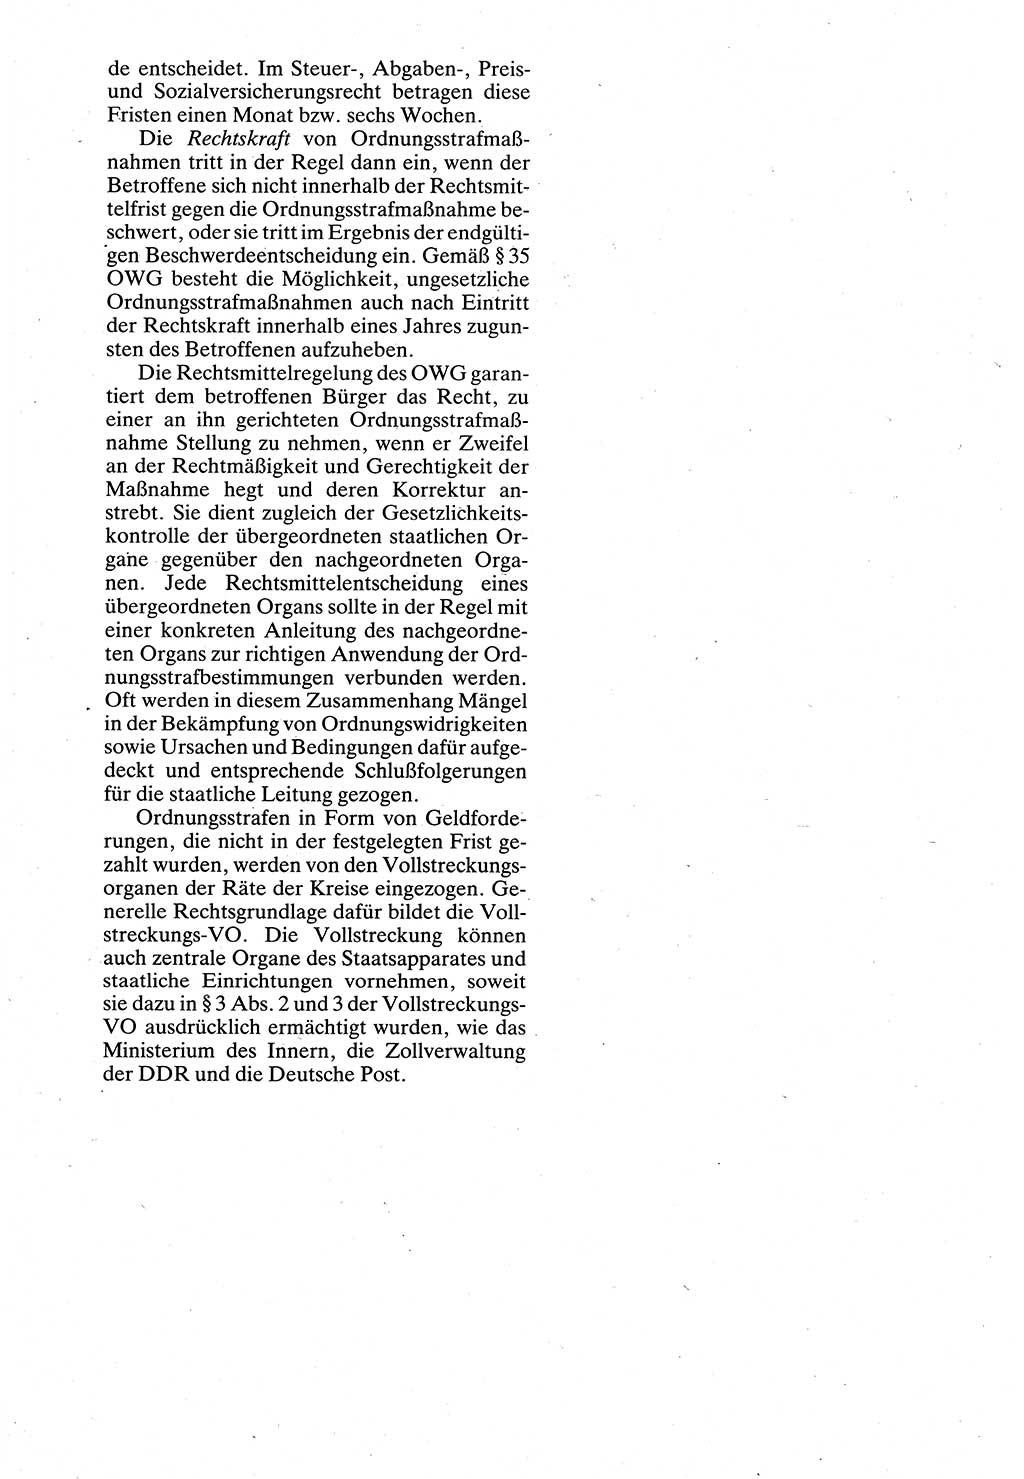 Verwaltungsrecht [Deutsche Demokratische Republik (DDR)], Lehrbuch 1988, Seite 168 (Verw.-R. DDR Lb. 1988, S. 168)